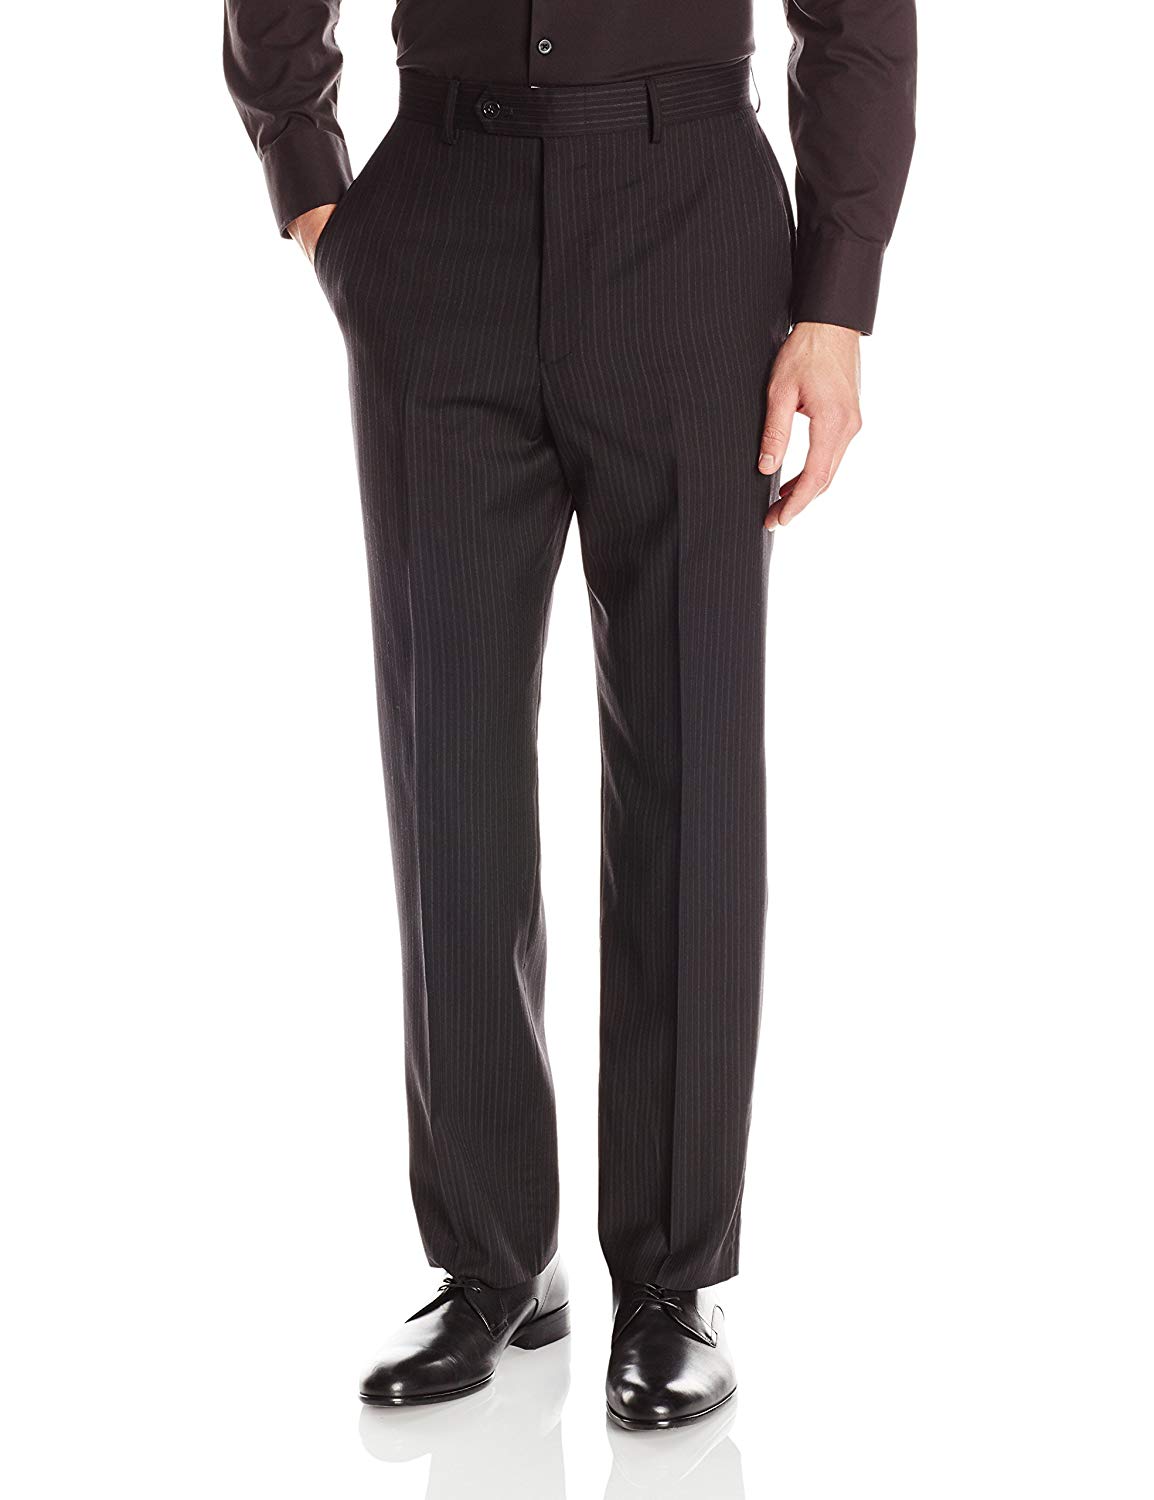 Men's Suits Jones New York : Suits & Suit Separates - Jones New York ...